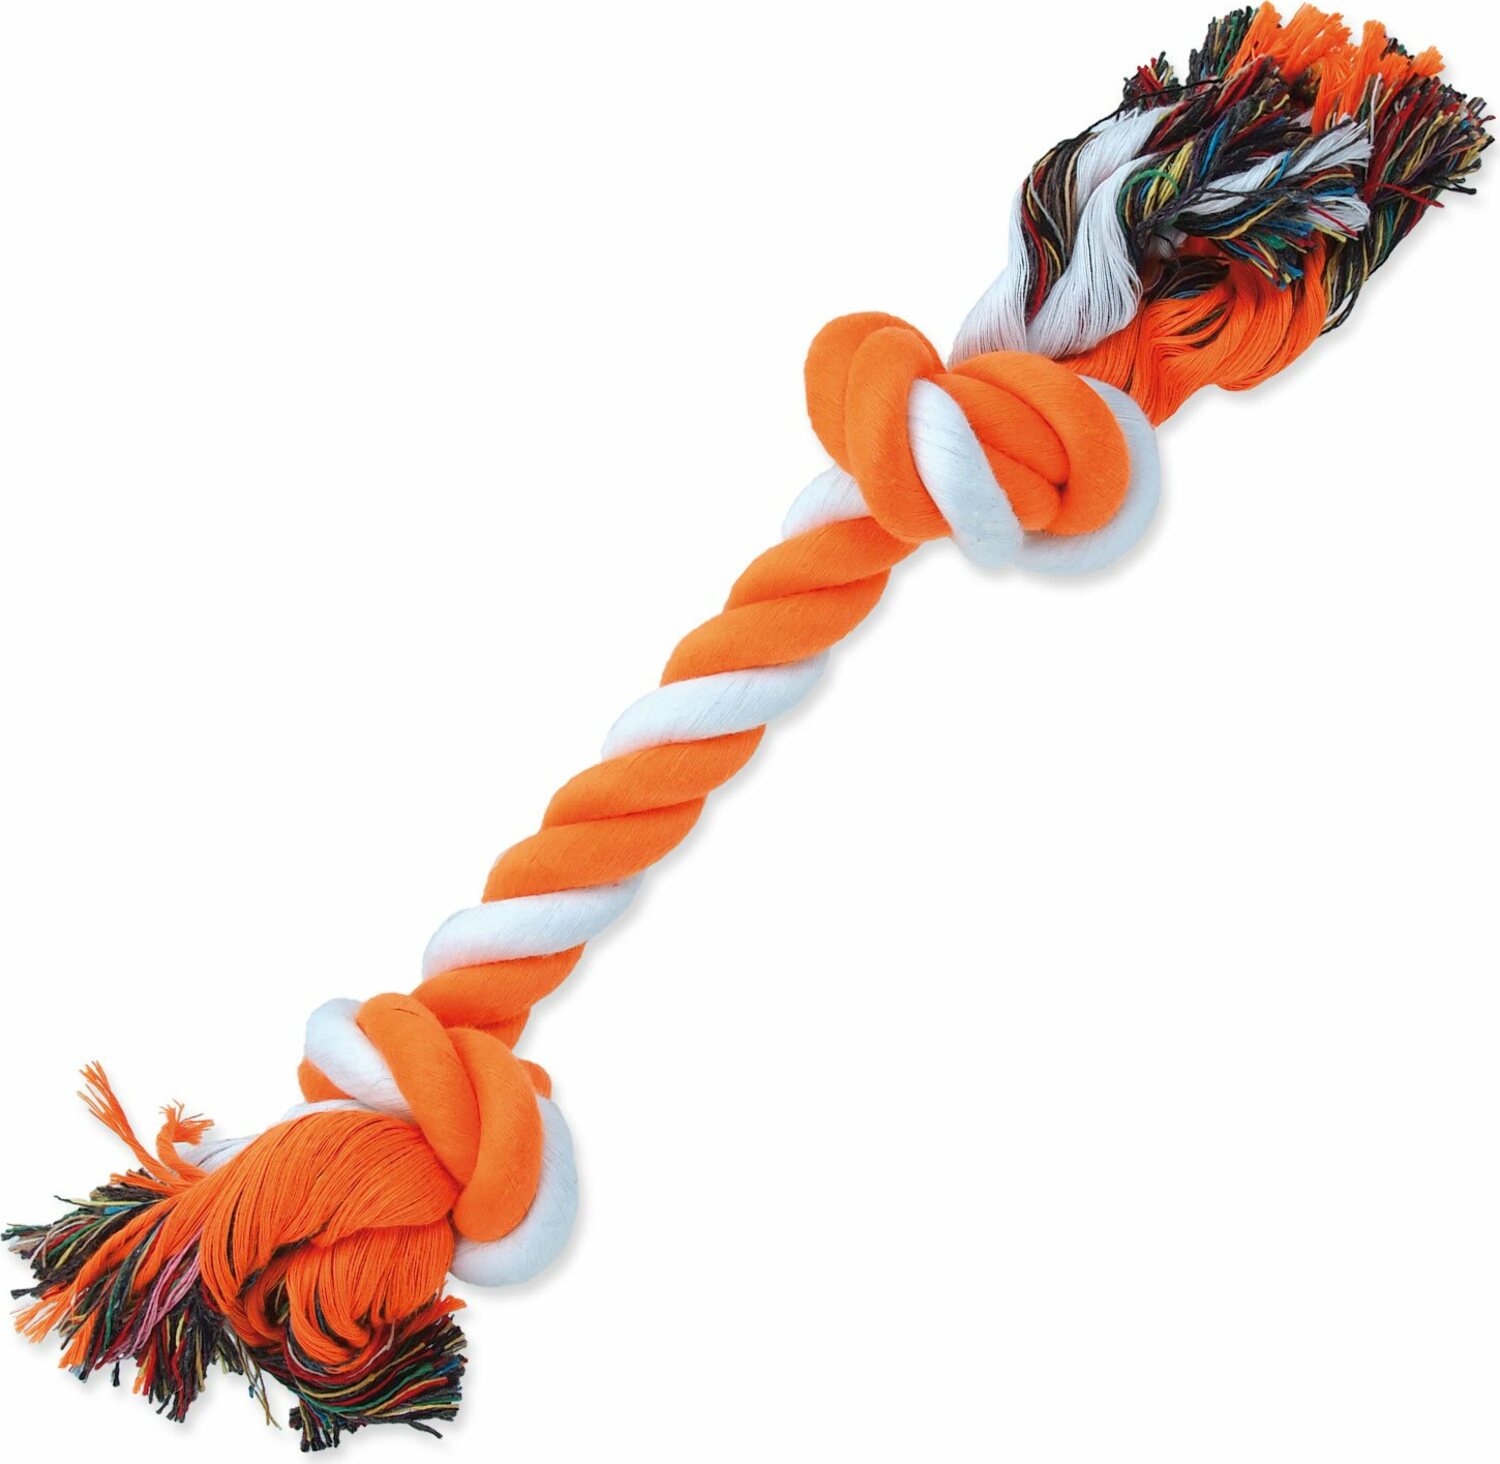 Hračka Dog Fantasy uzel bavlněný oranžovo-bílý 2 knoty 30cm